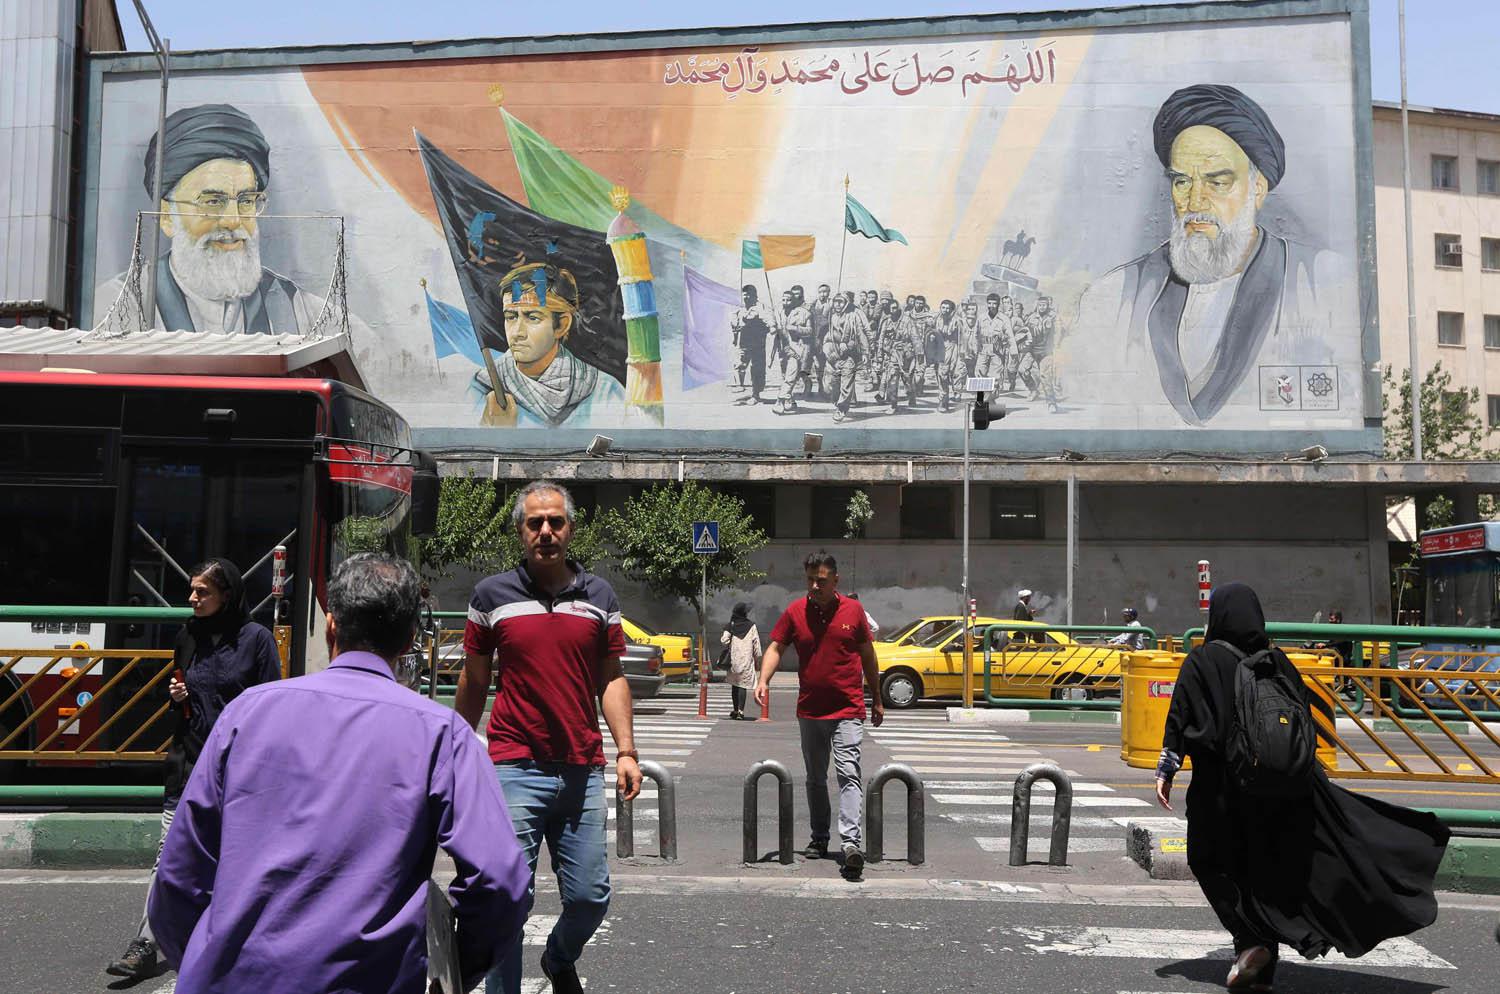 لوحة جدارية وسط طهران تحتفي بالخميني وخامنئي